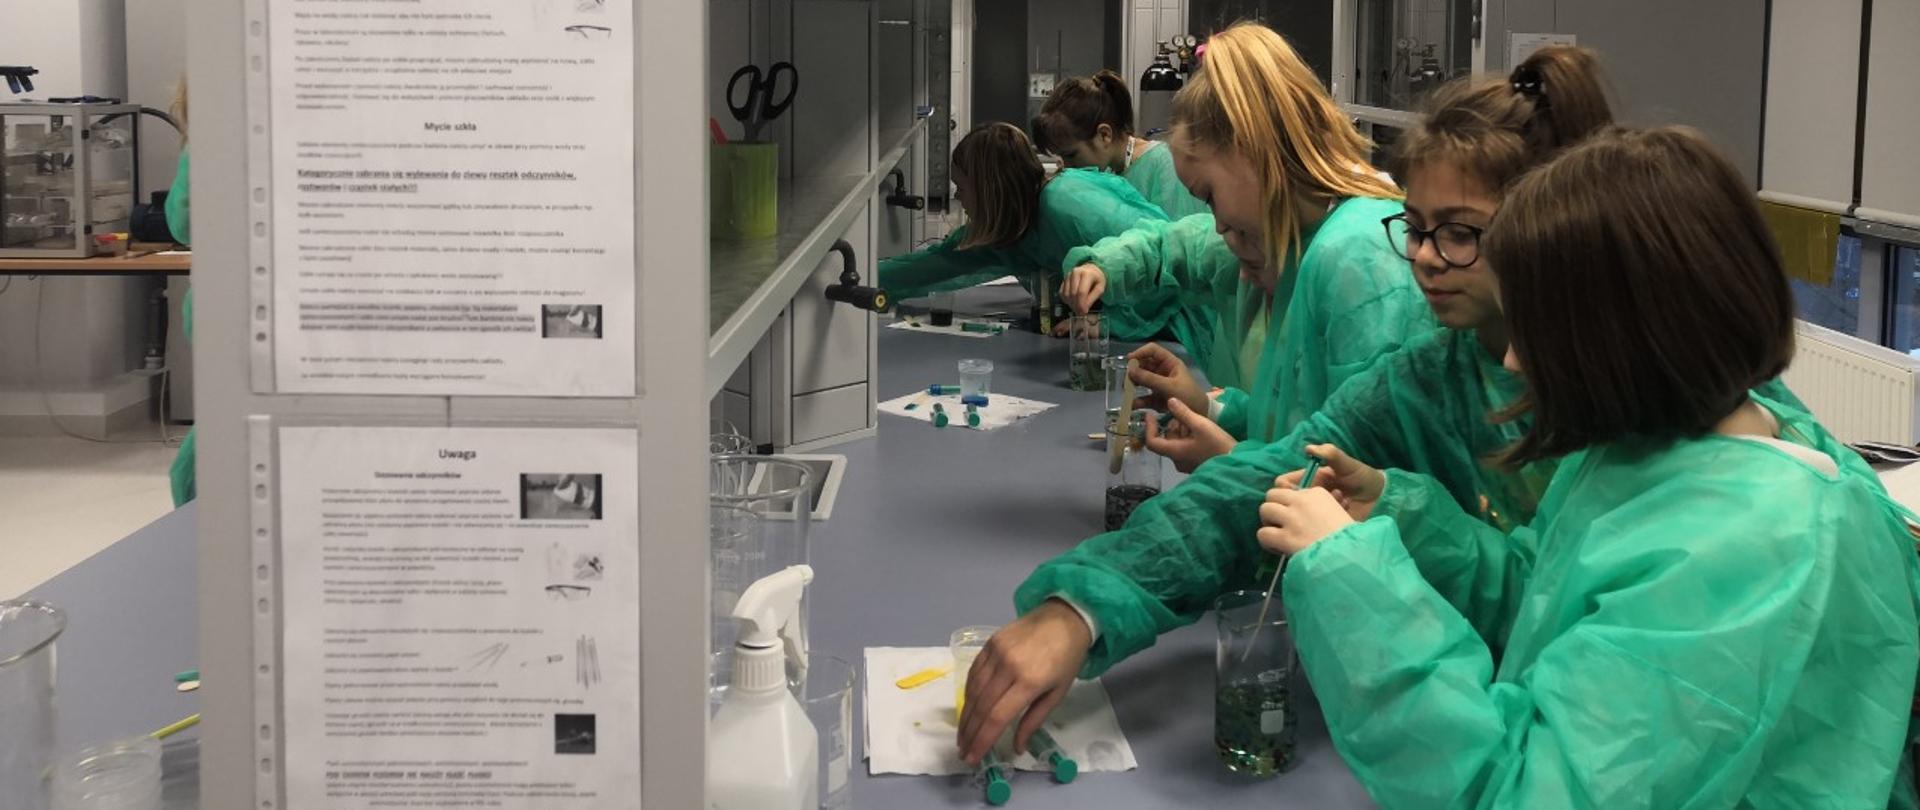 Zajęcia w laboratorium. Siedem nastolatek w zielonych fartuchach, stojąc w rzędzie przy długim blacie, wlewa do menzurek płyn za pomocą strzykawek